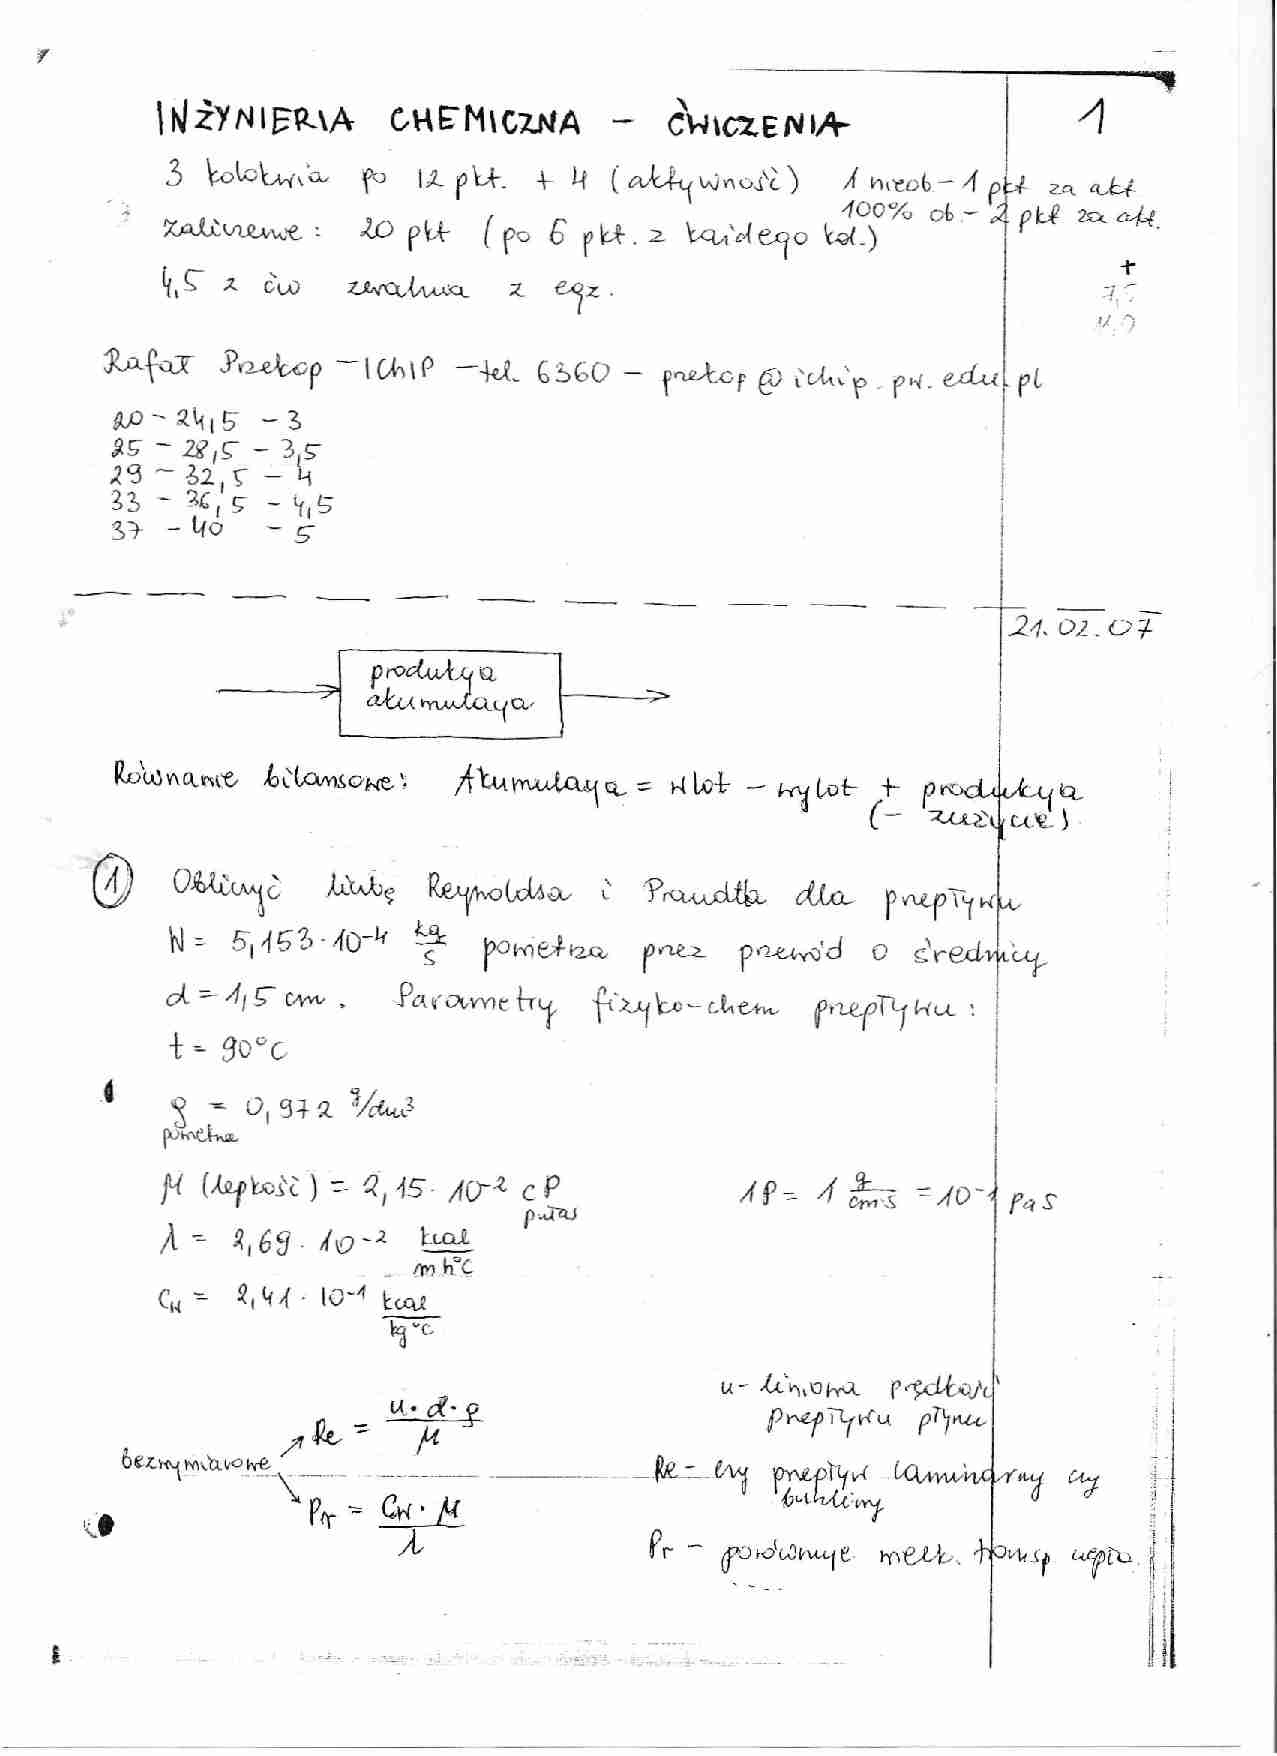 Inżynieria chemiczna - ćwiczenia - bilans materiałowy - strona 1